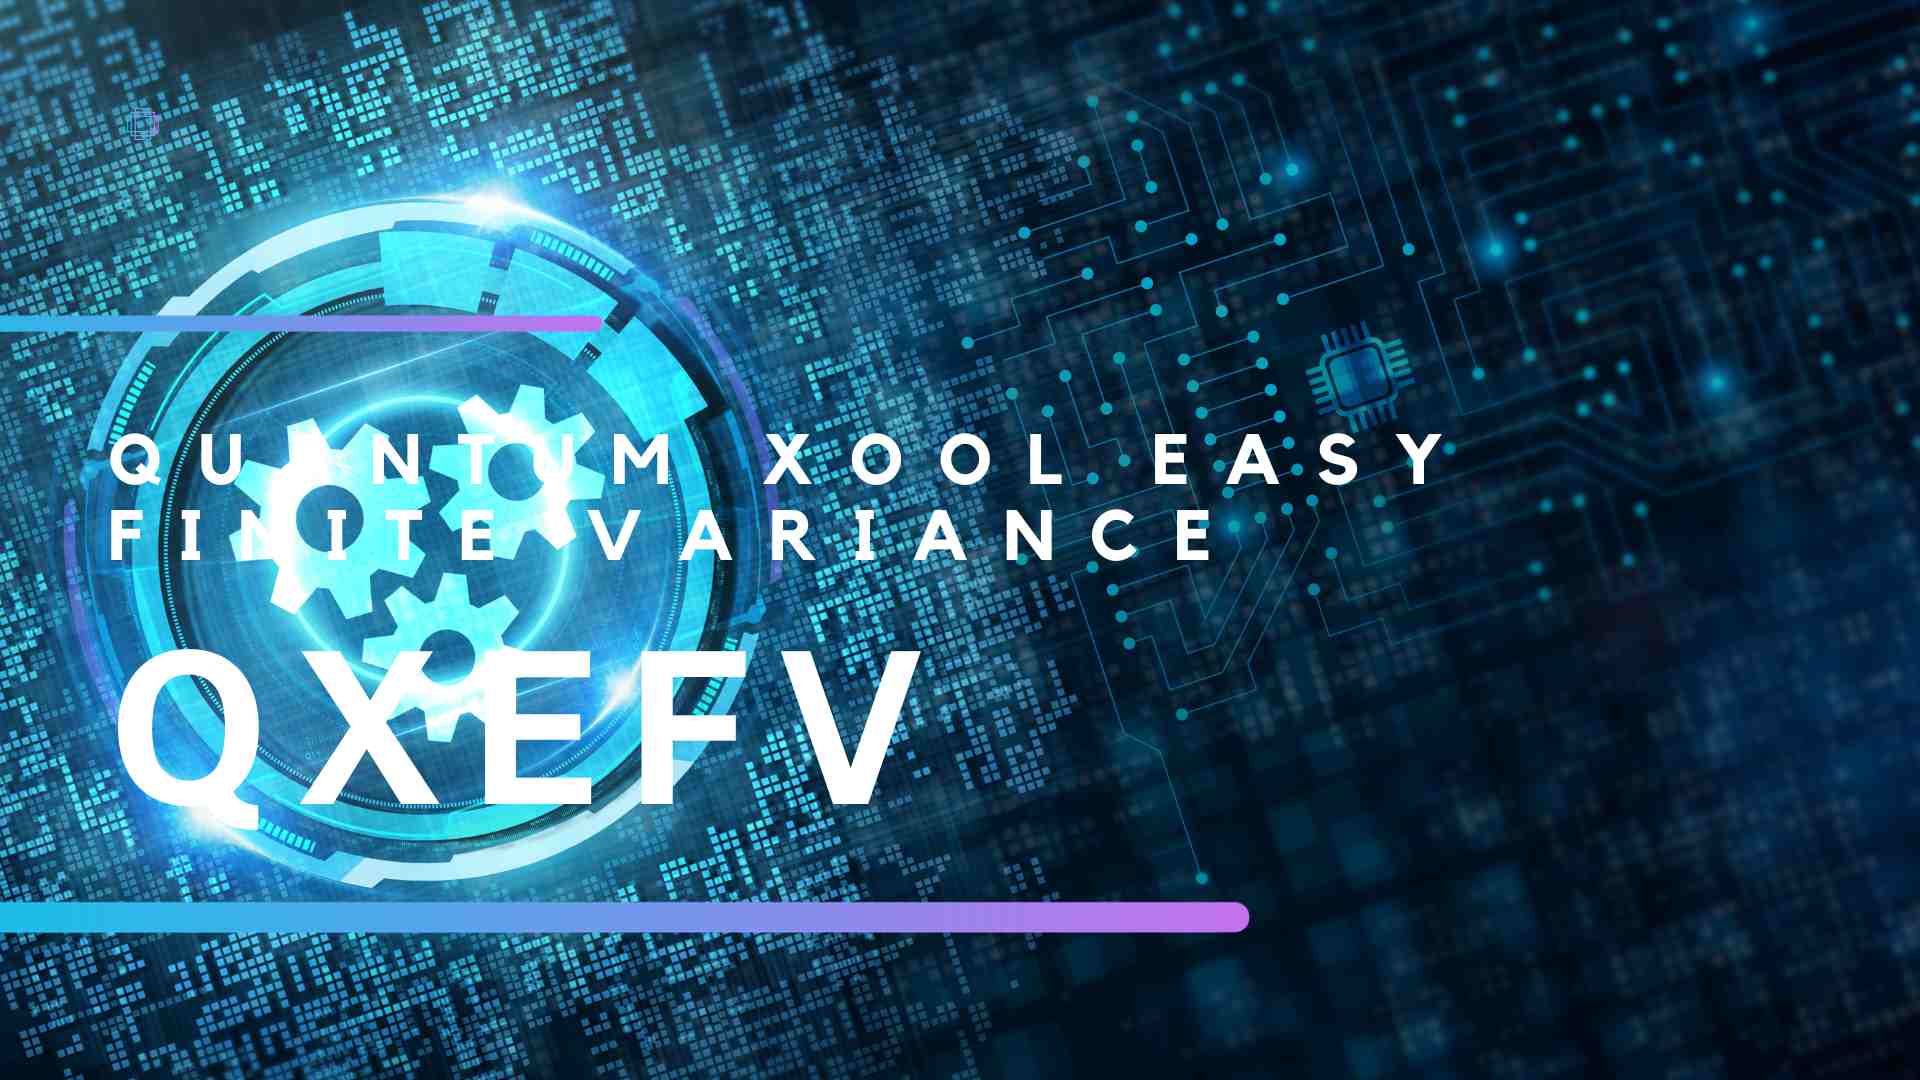 Qxefv – Quantum Xool Easy Finite Variance